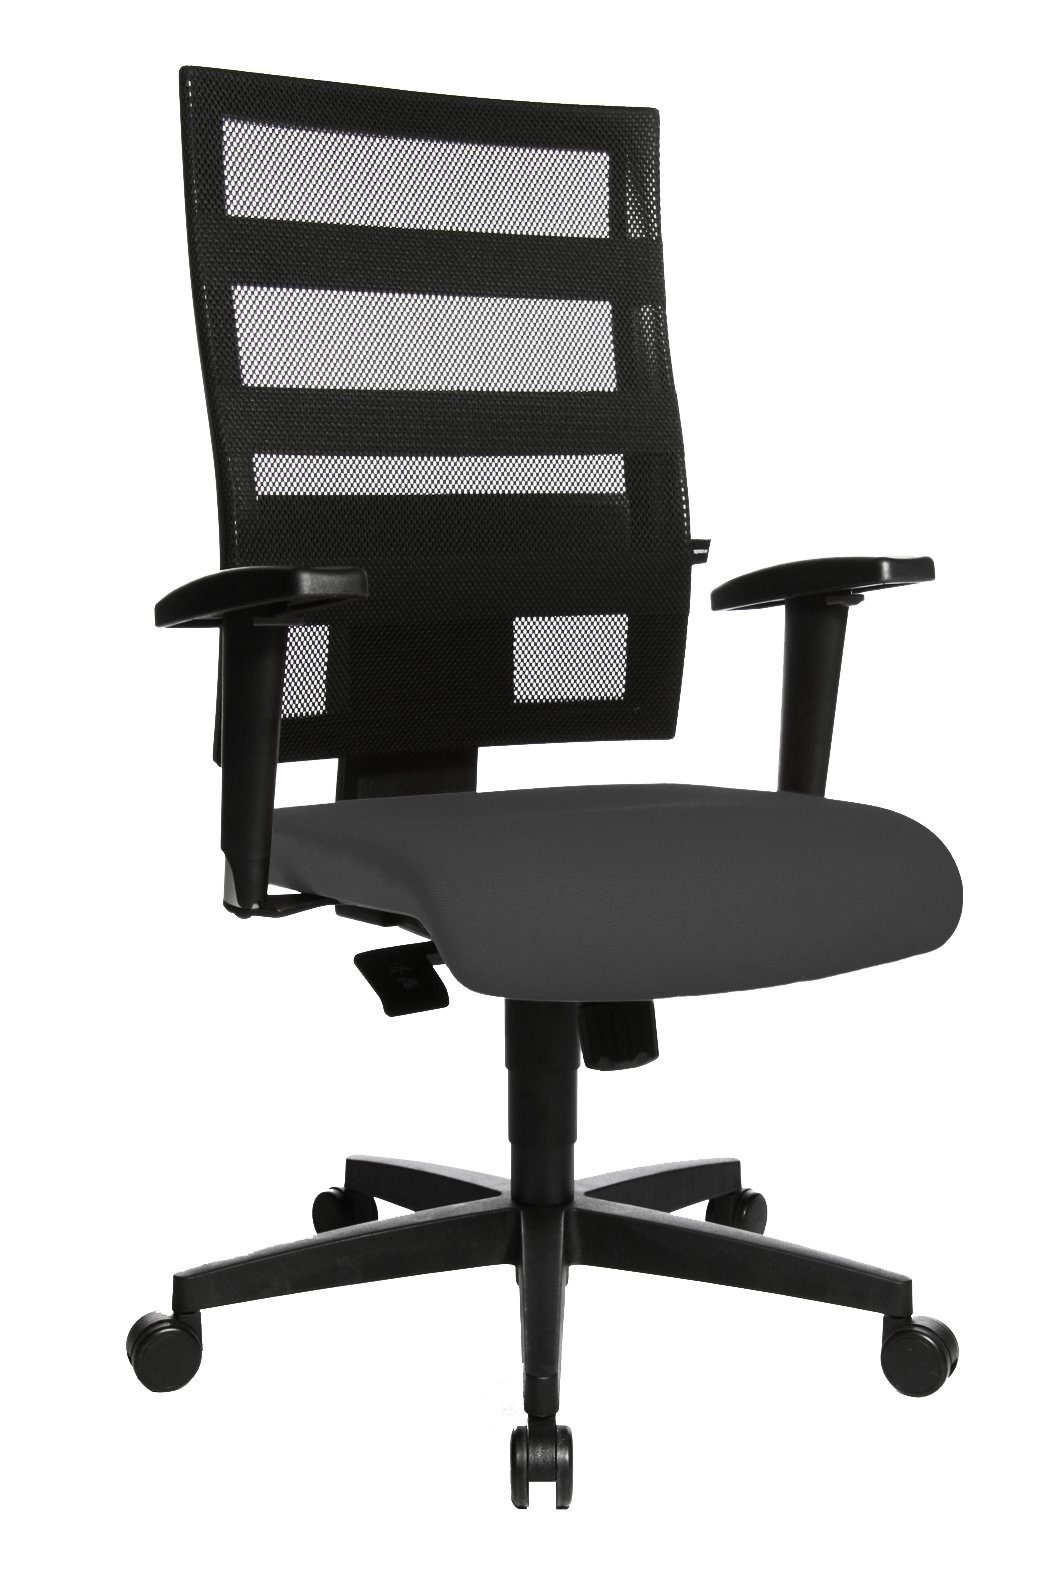 Drehstuhl extra grau GS Kunststofffußkreuz, rundum zertif (1), Steelboxx Bürodrehstuhl Netzrücken, Rückenlehne gepolsterte Armlehnen, mit komfortable, Höhenverstellbar,